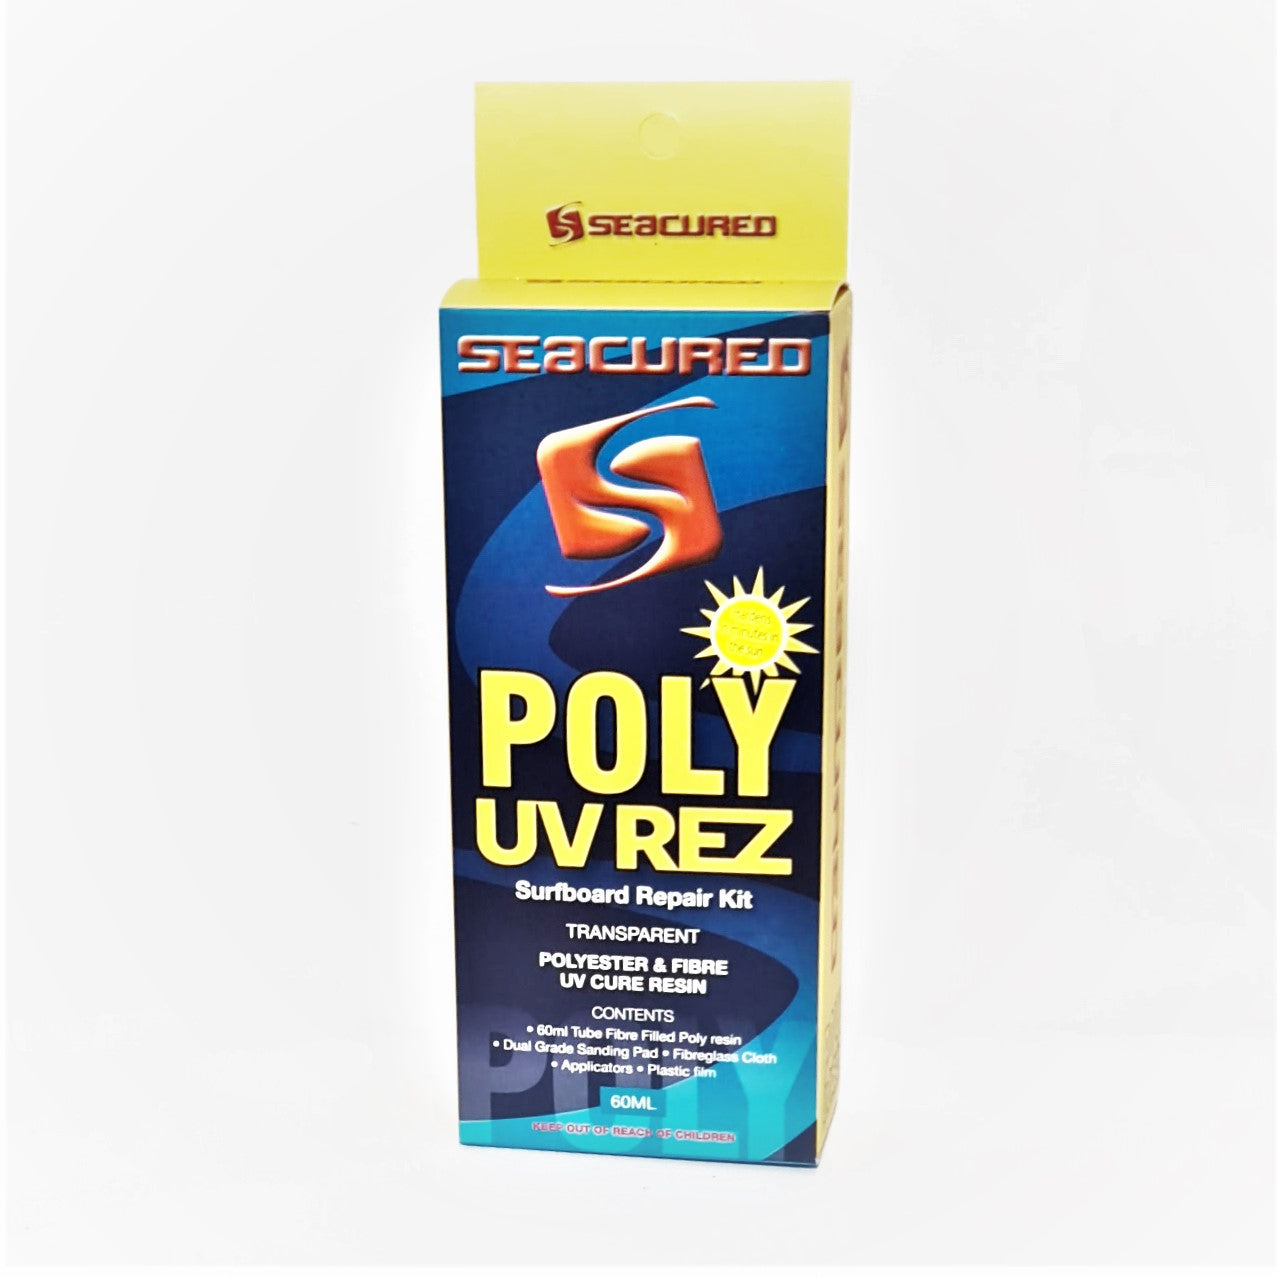 Seacured UV REZ Poly fibre resin large 60ml tube